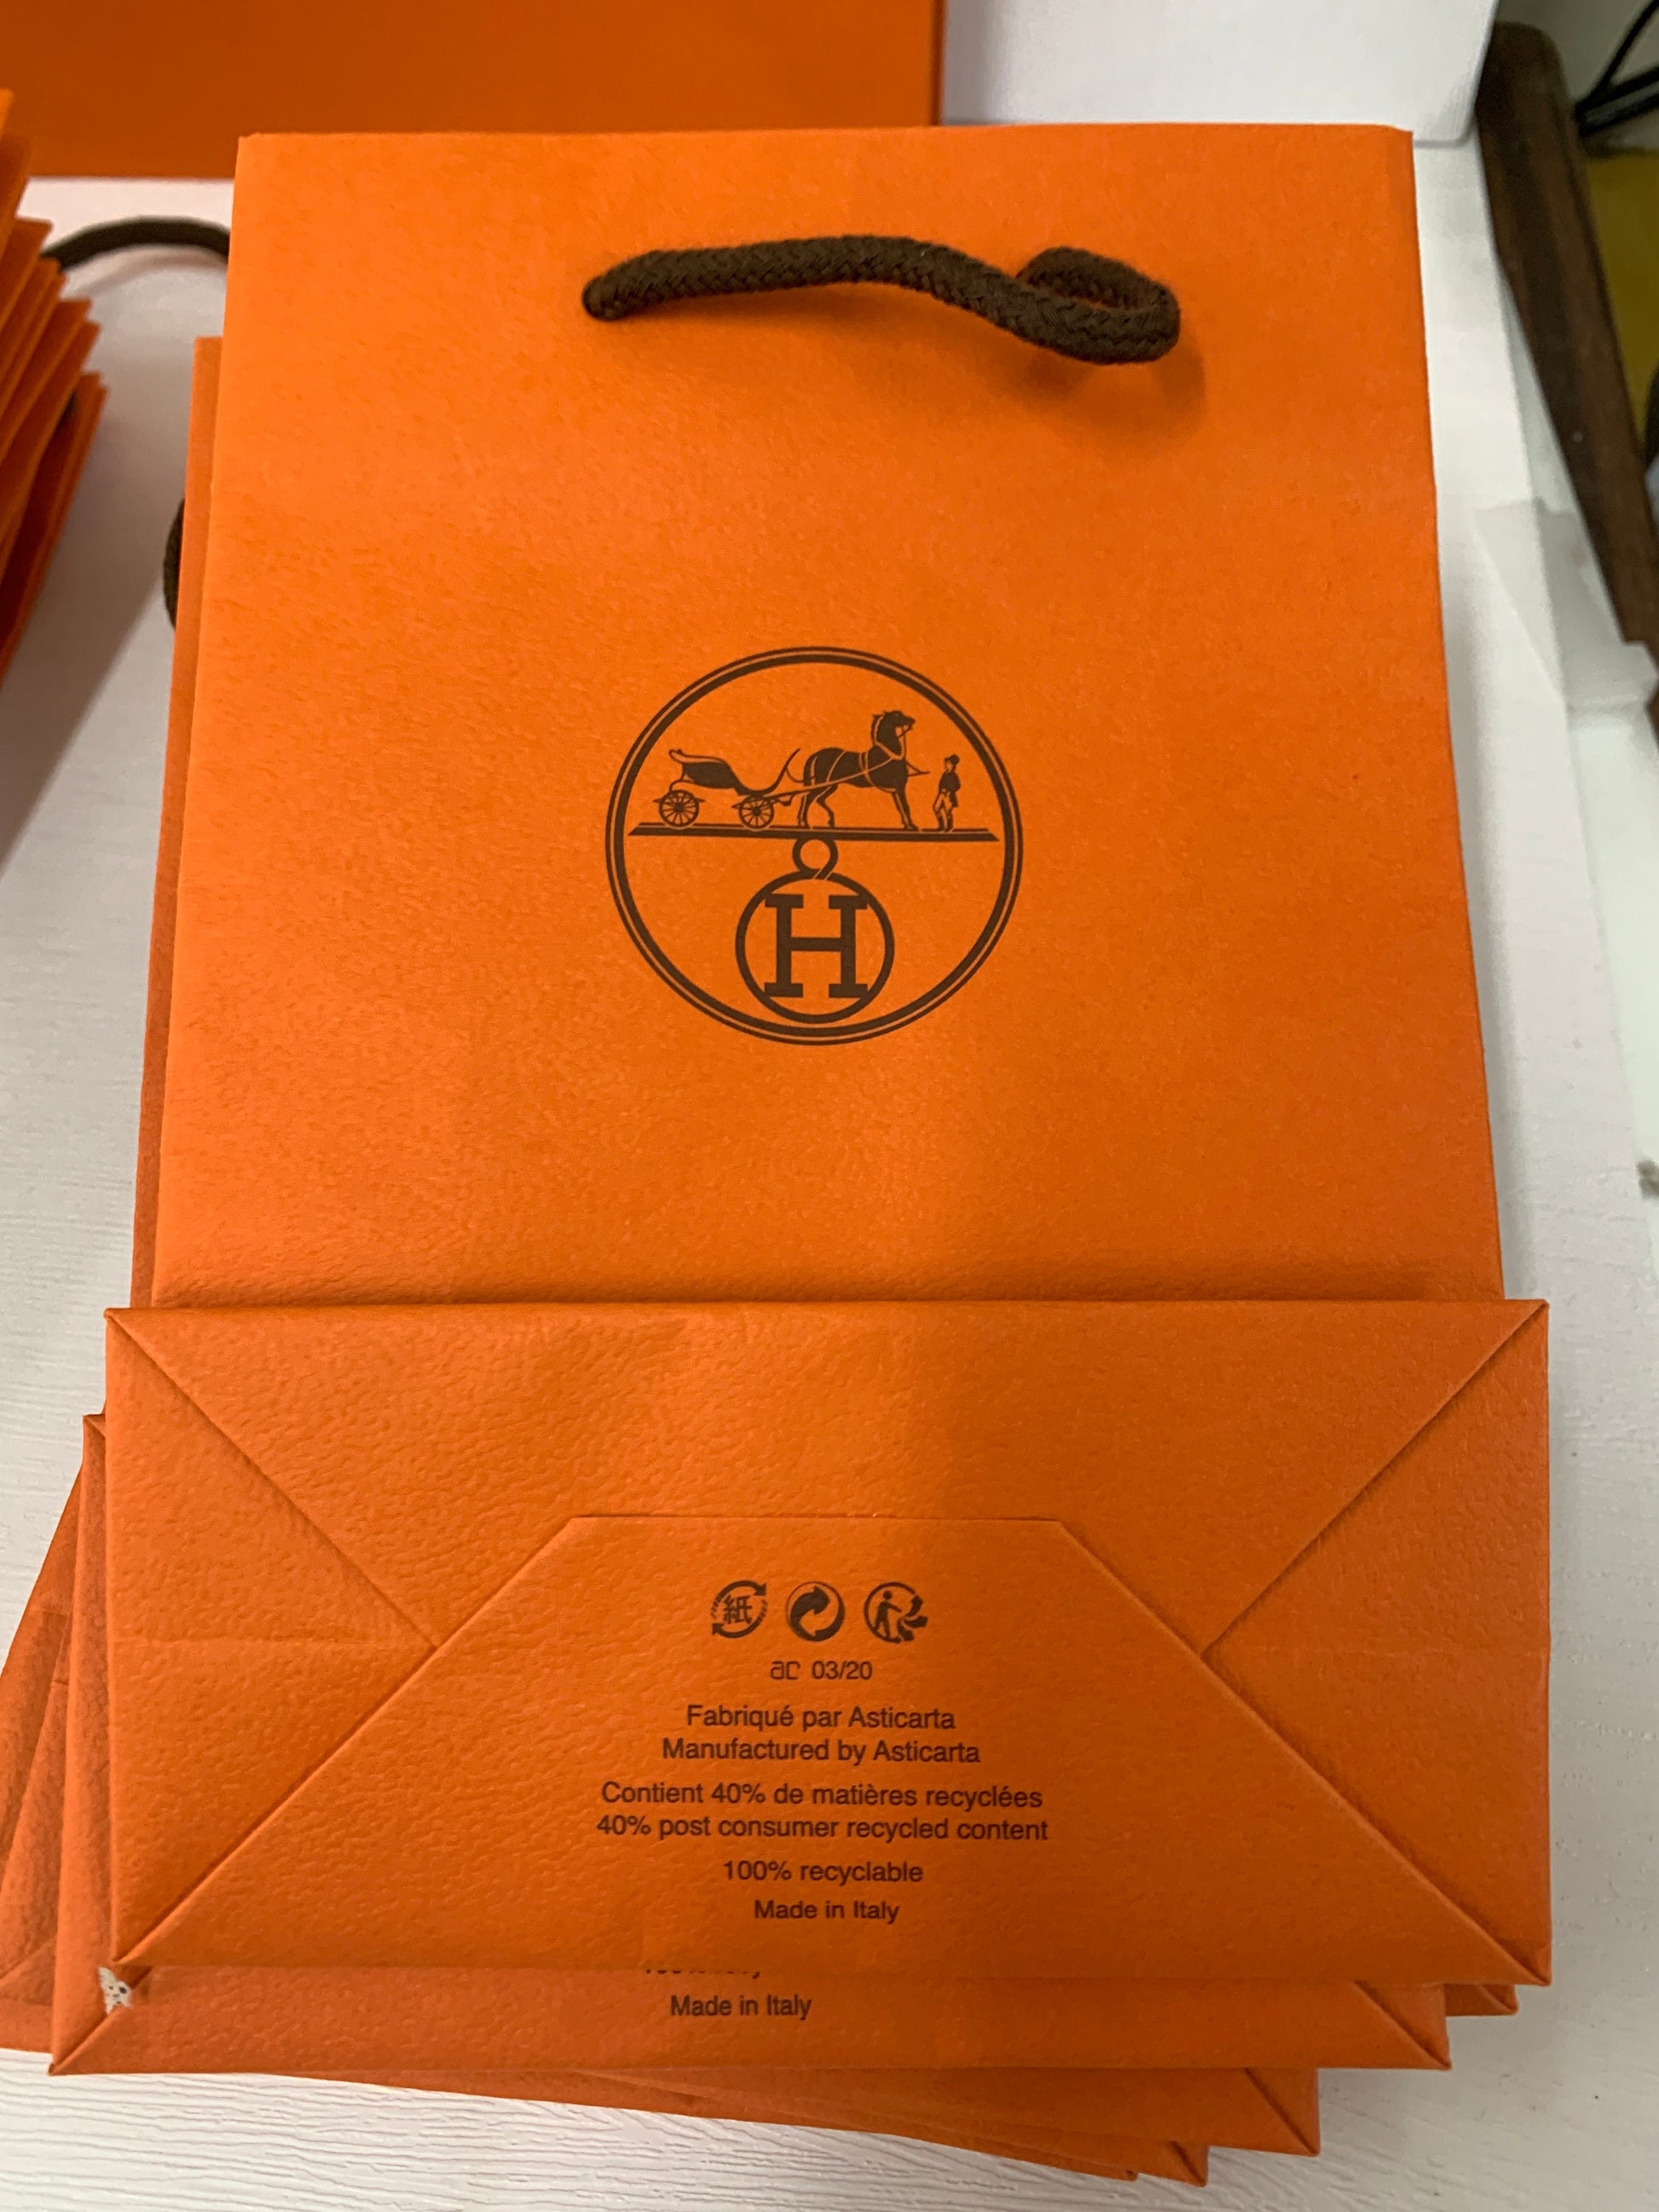 Hermes Hermes Orange Large Shopping Bag + Medium Dust bag and Box